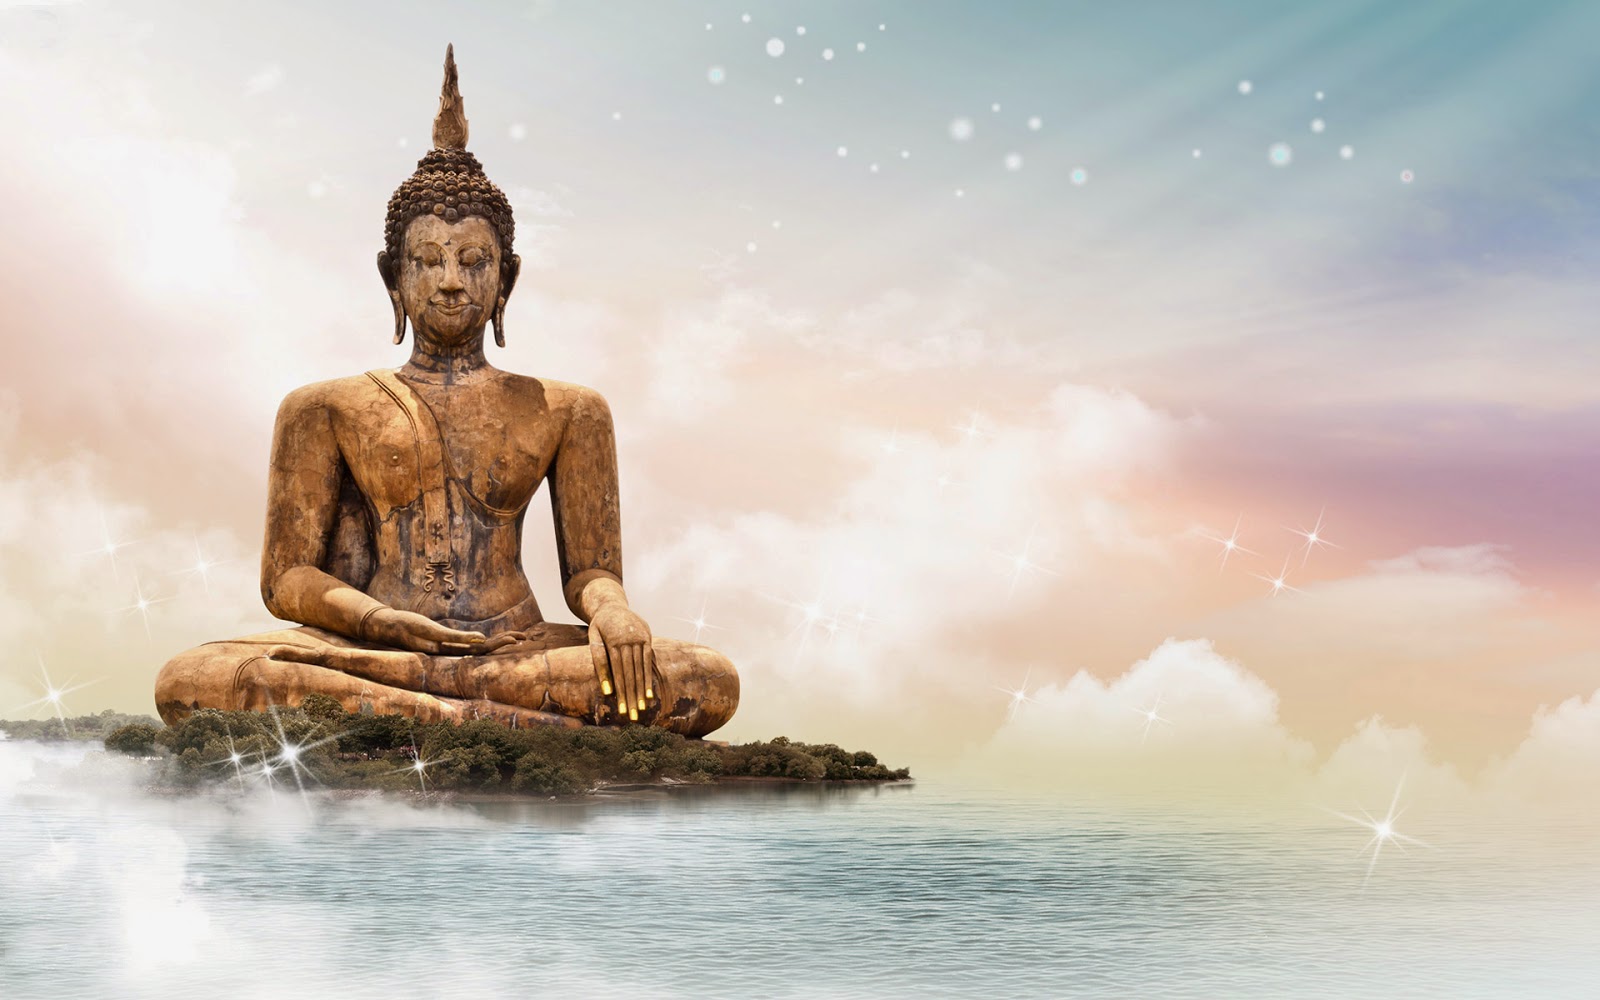 6000 Free Buddhism  Meditation Images  Pixabay